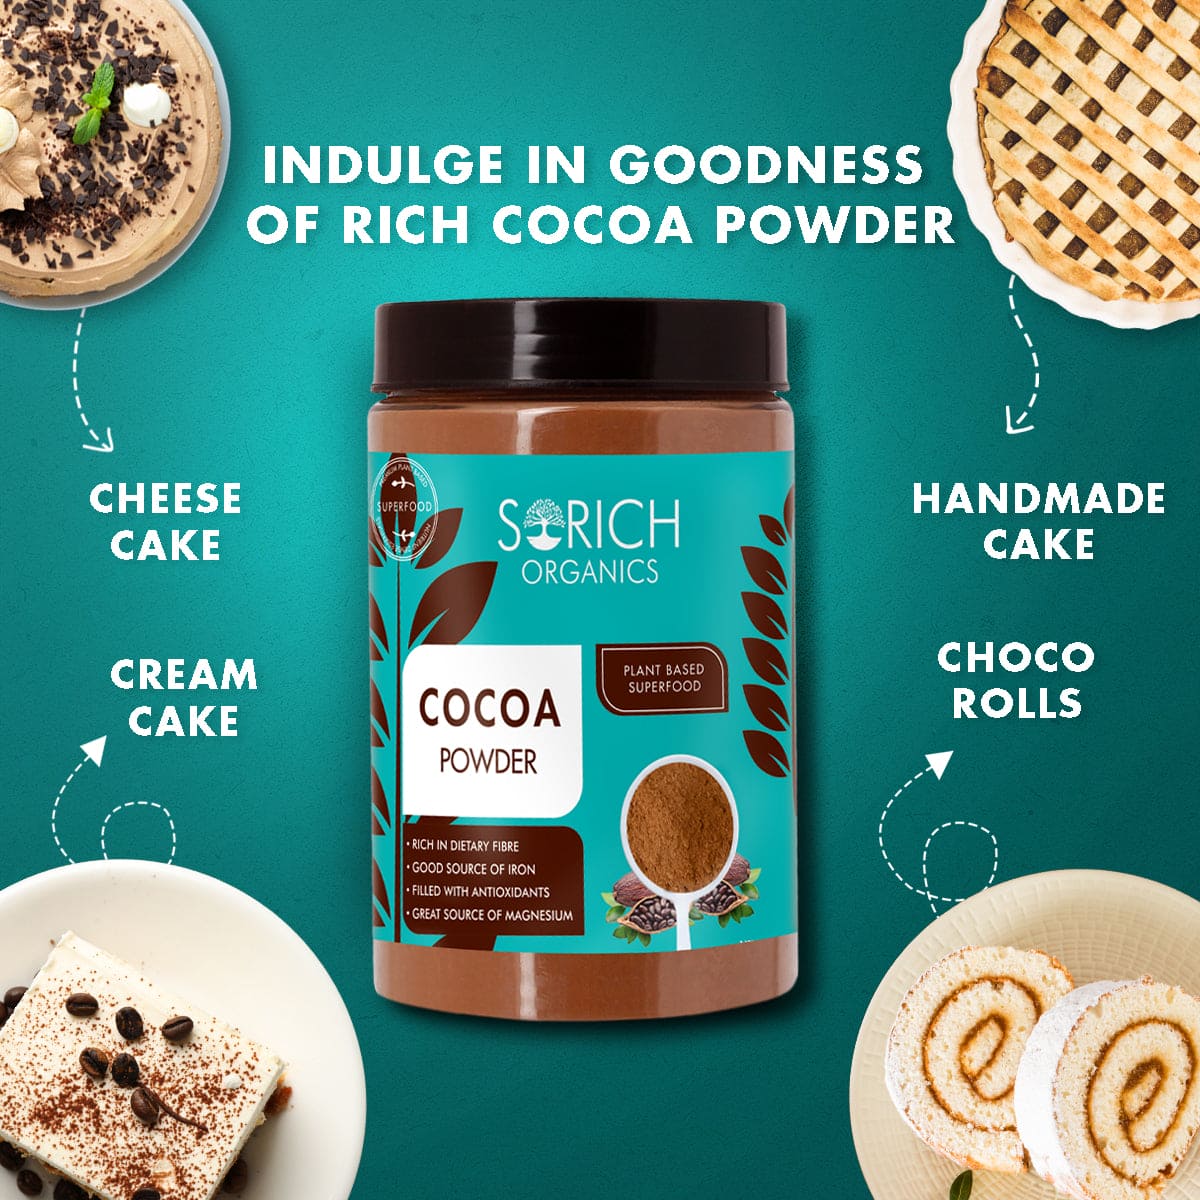 Light Cocoa Powder 400 gm - Sorich